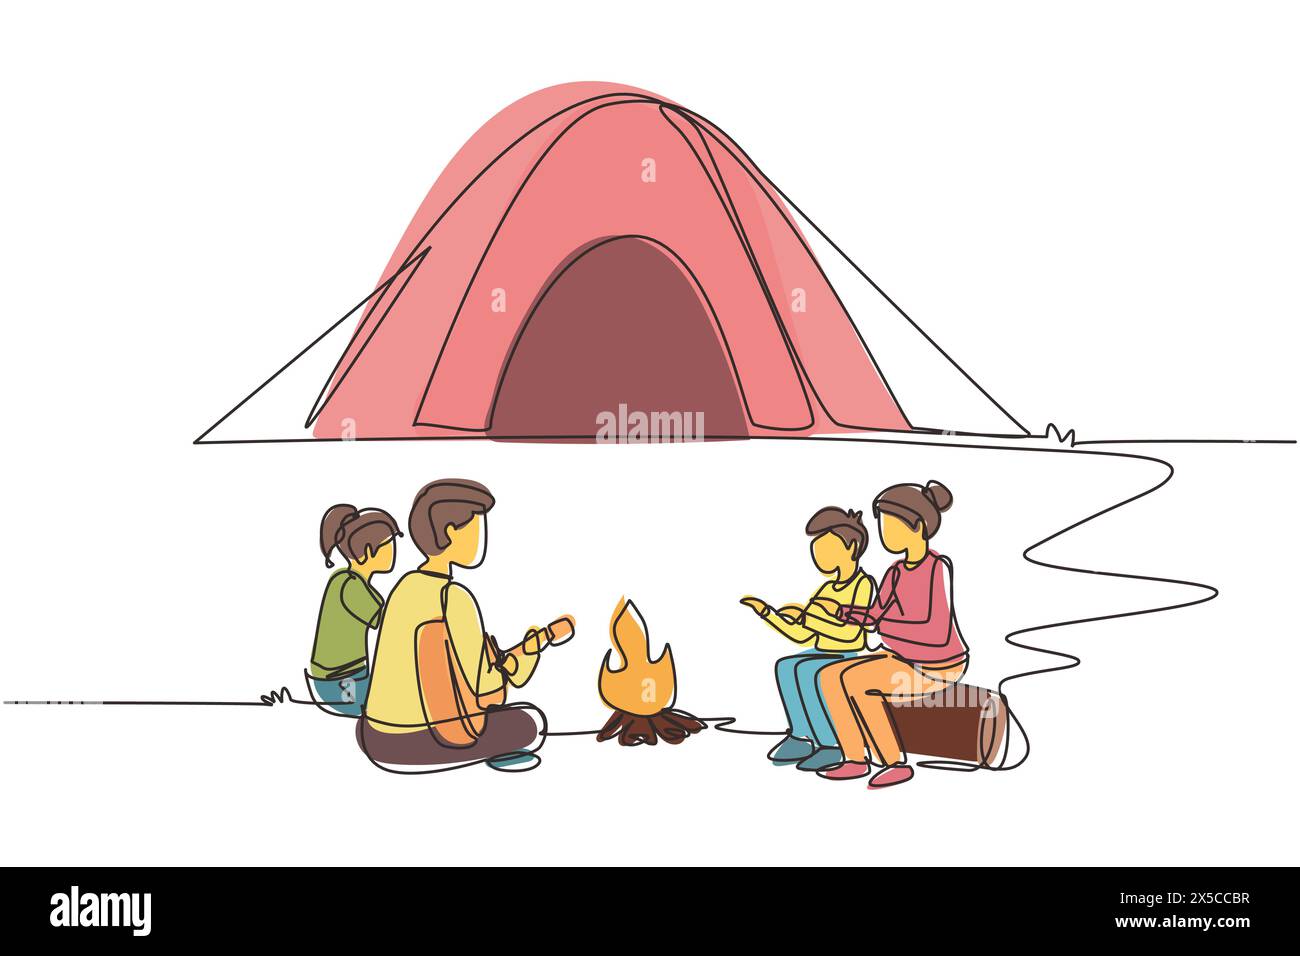 Una sola linea che attira la famiglia del campeggio scalda il corpo intorno alle tende da campeggio. Papa' che suona la chitarra, mamma e bambini seduti a terra e i tronchi, canta la canzone Illustrazione Vettoriale